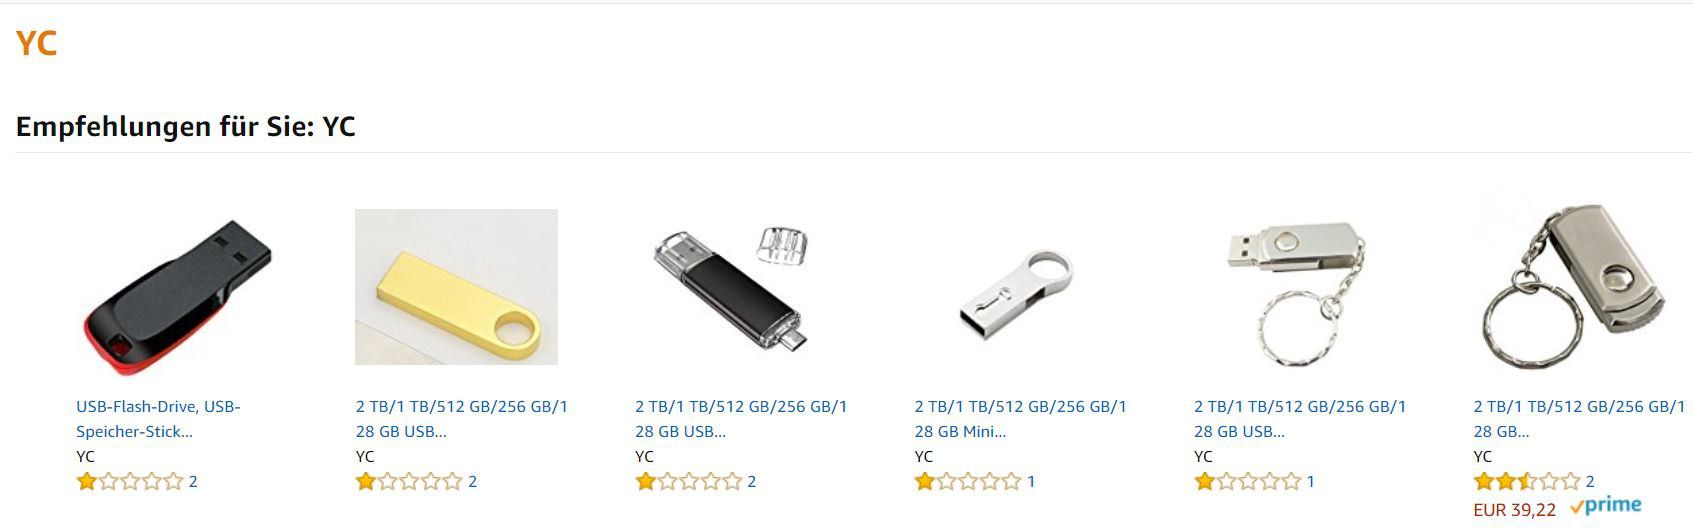 NEWS: Gefälschte 2 Terabyte USB Sticks bei Amazon und Ebay!